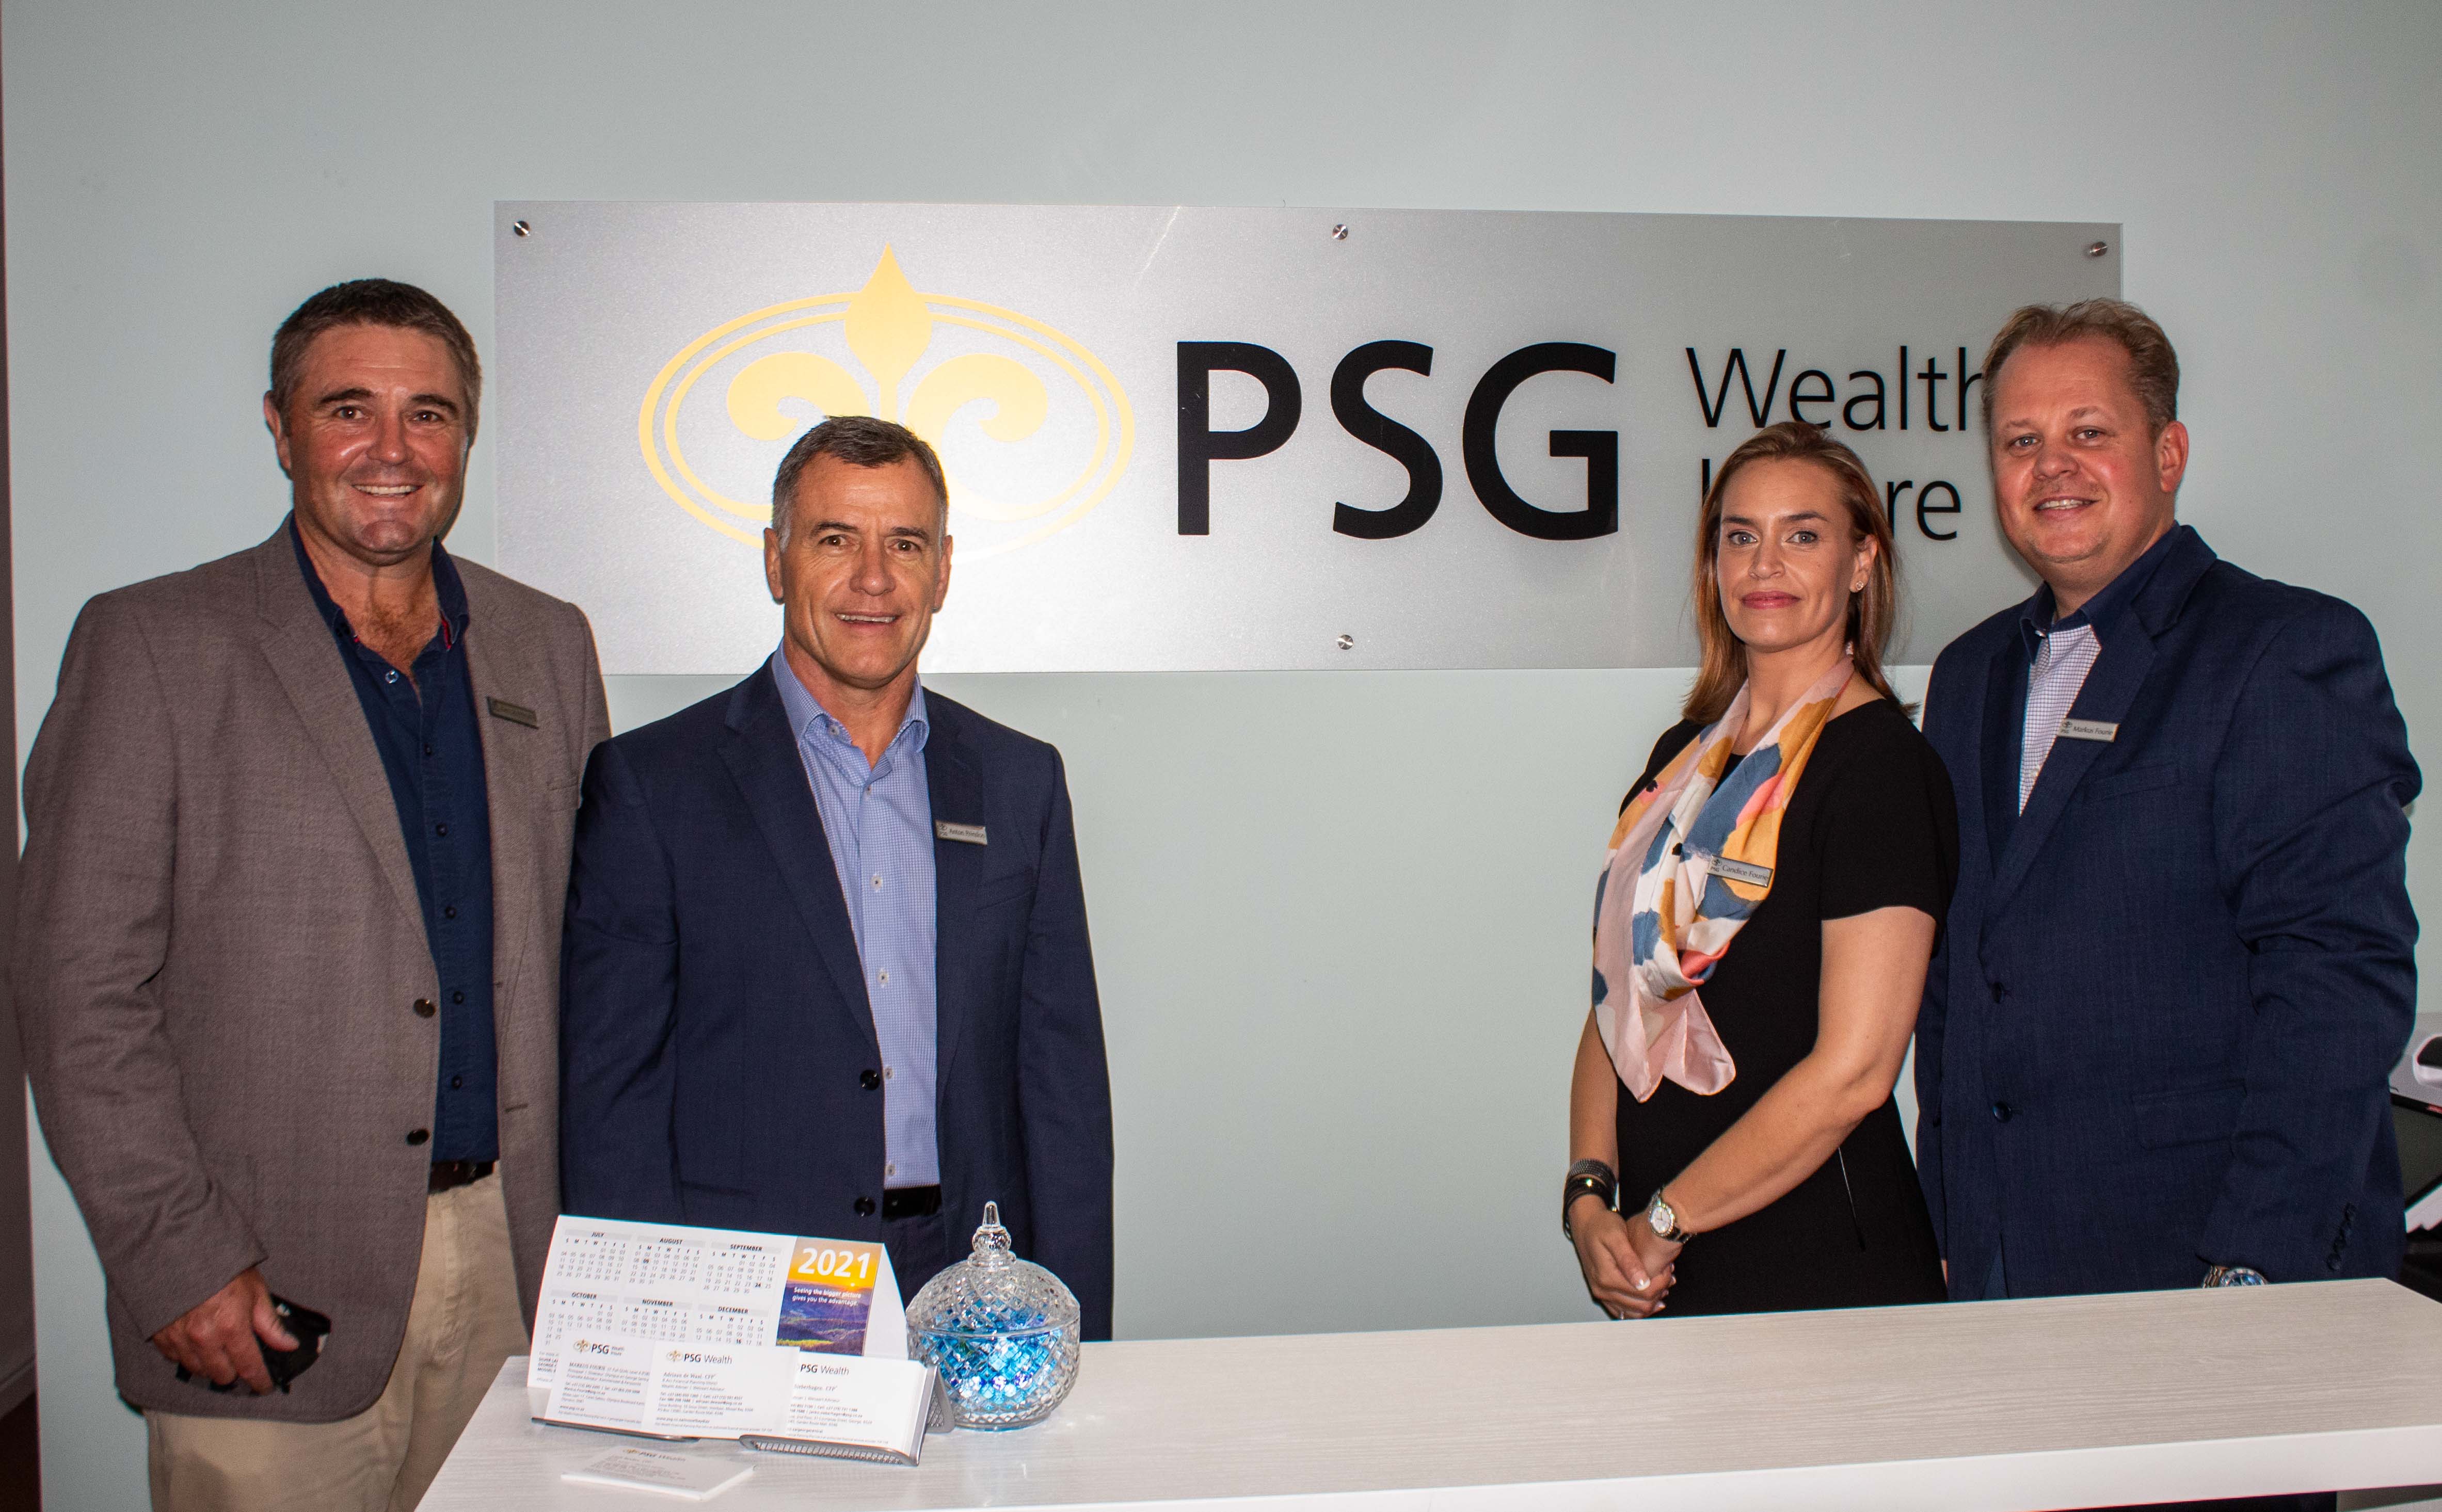 PSG Wealth & Insure opens in Plett  KnysnaPlett Herald